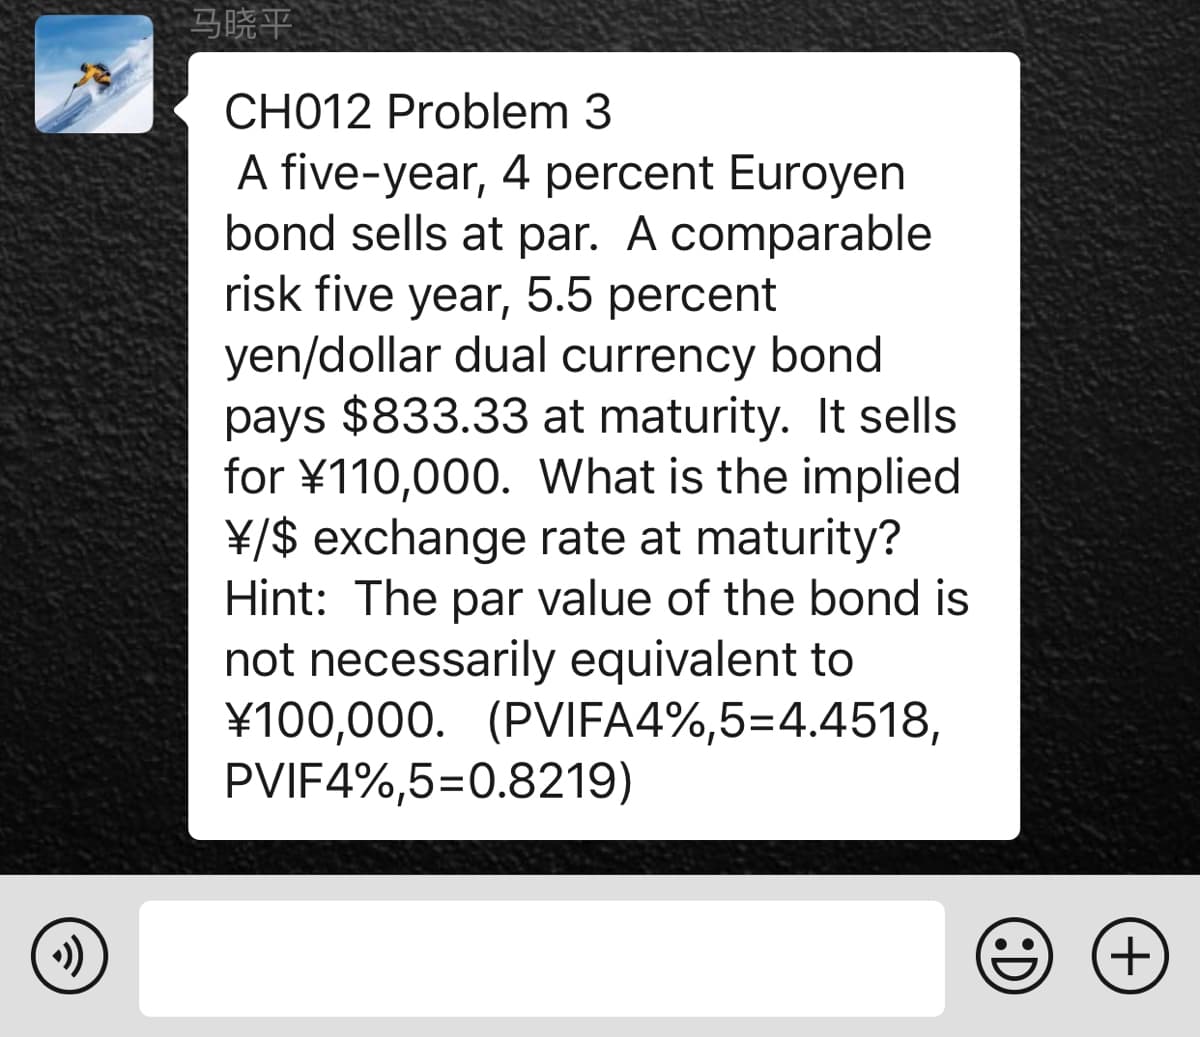 马晓平
CH012 Problem 3
A five-year, 4 percent Euroyen
bond sells at par. A comparable
risk five year, 5.5 percent
yen/dollar dual currency bond
pays $833.33 at maturity. It sells
for ¥110,000. What is the implied
¥/$ exchange rate at maturity?
Hint: The par value of the bond is
not necessarily equivalent to
¥100,000. (PVIFA4%,5=4.4518,
PVIF4%,5=0.8219)
+)
